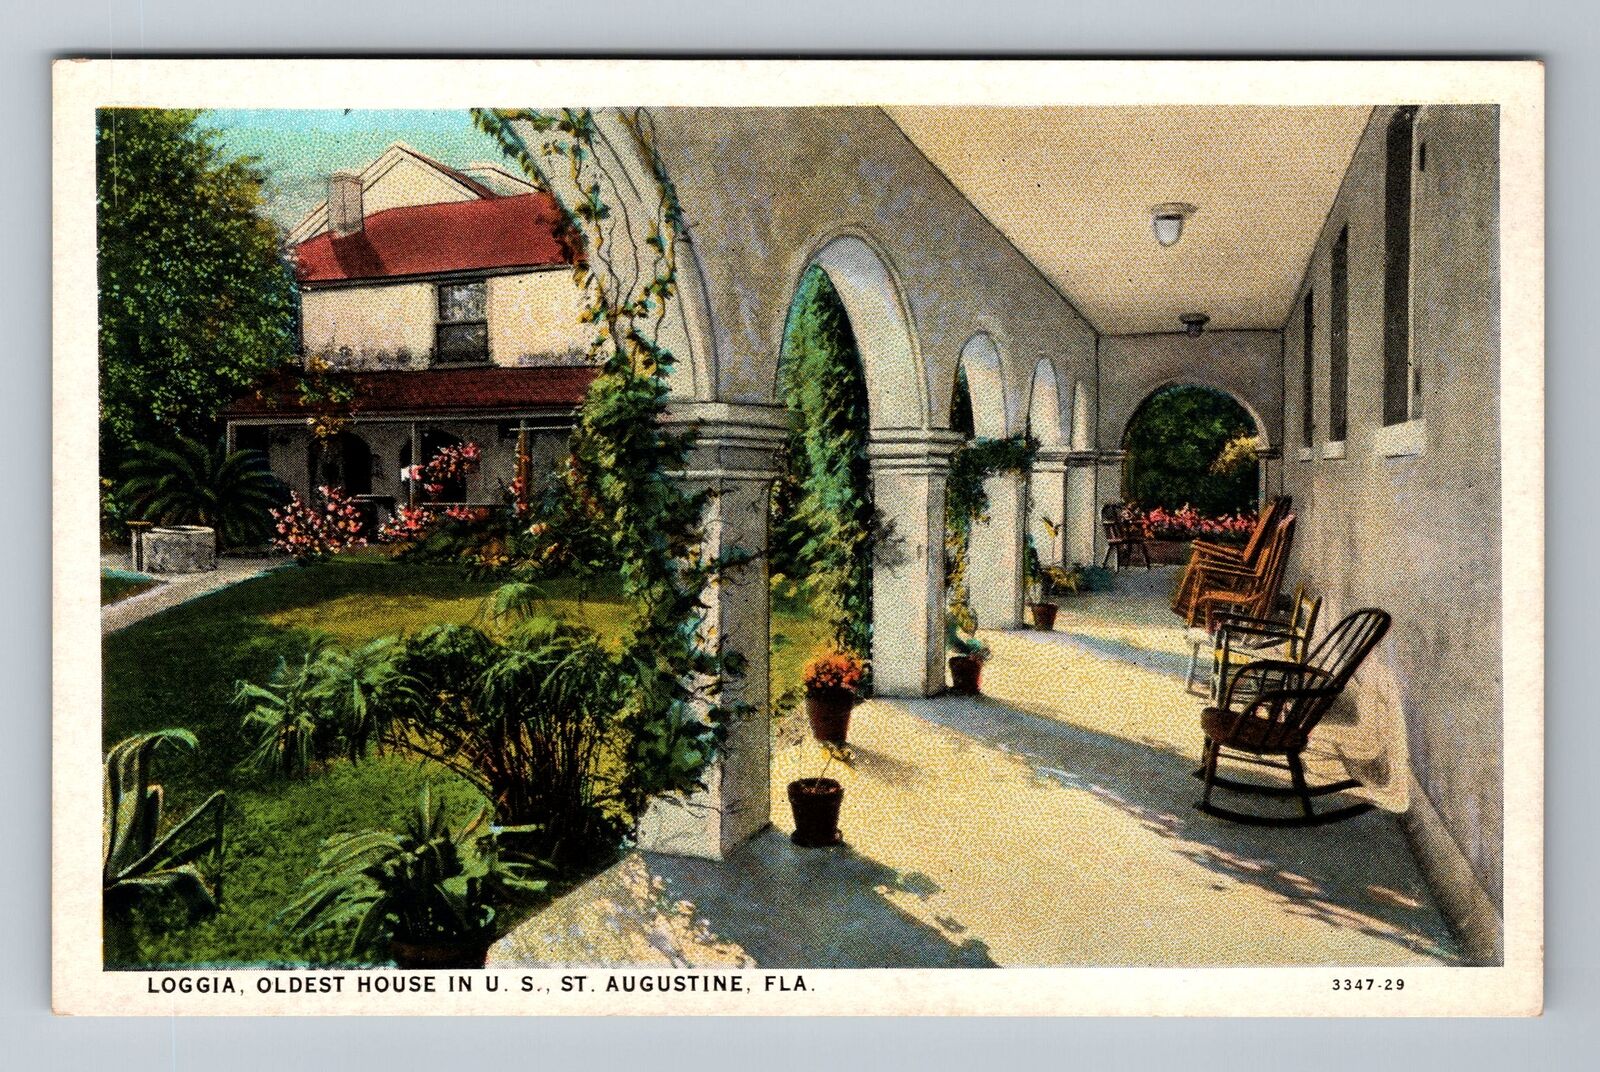 St Augustine FL-Florida, Loggia oldest House in U.S. Vintage Postcard